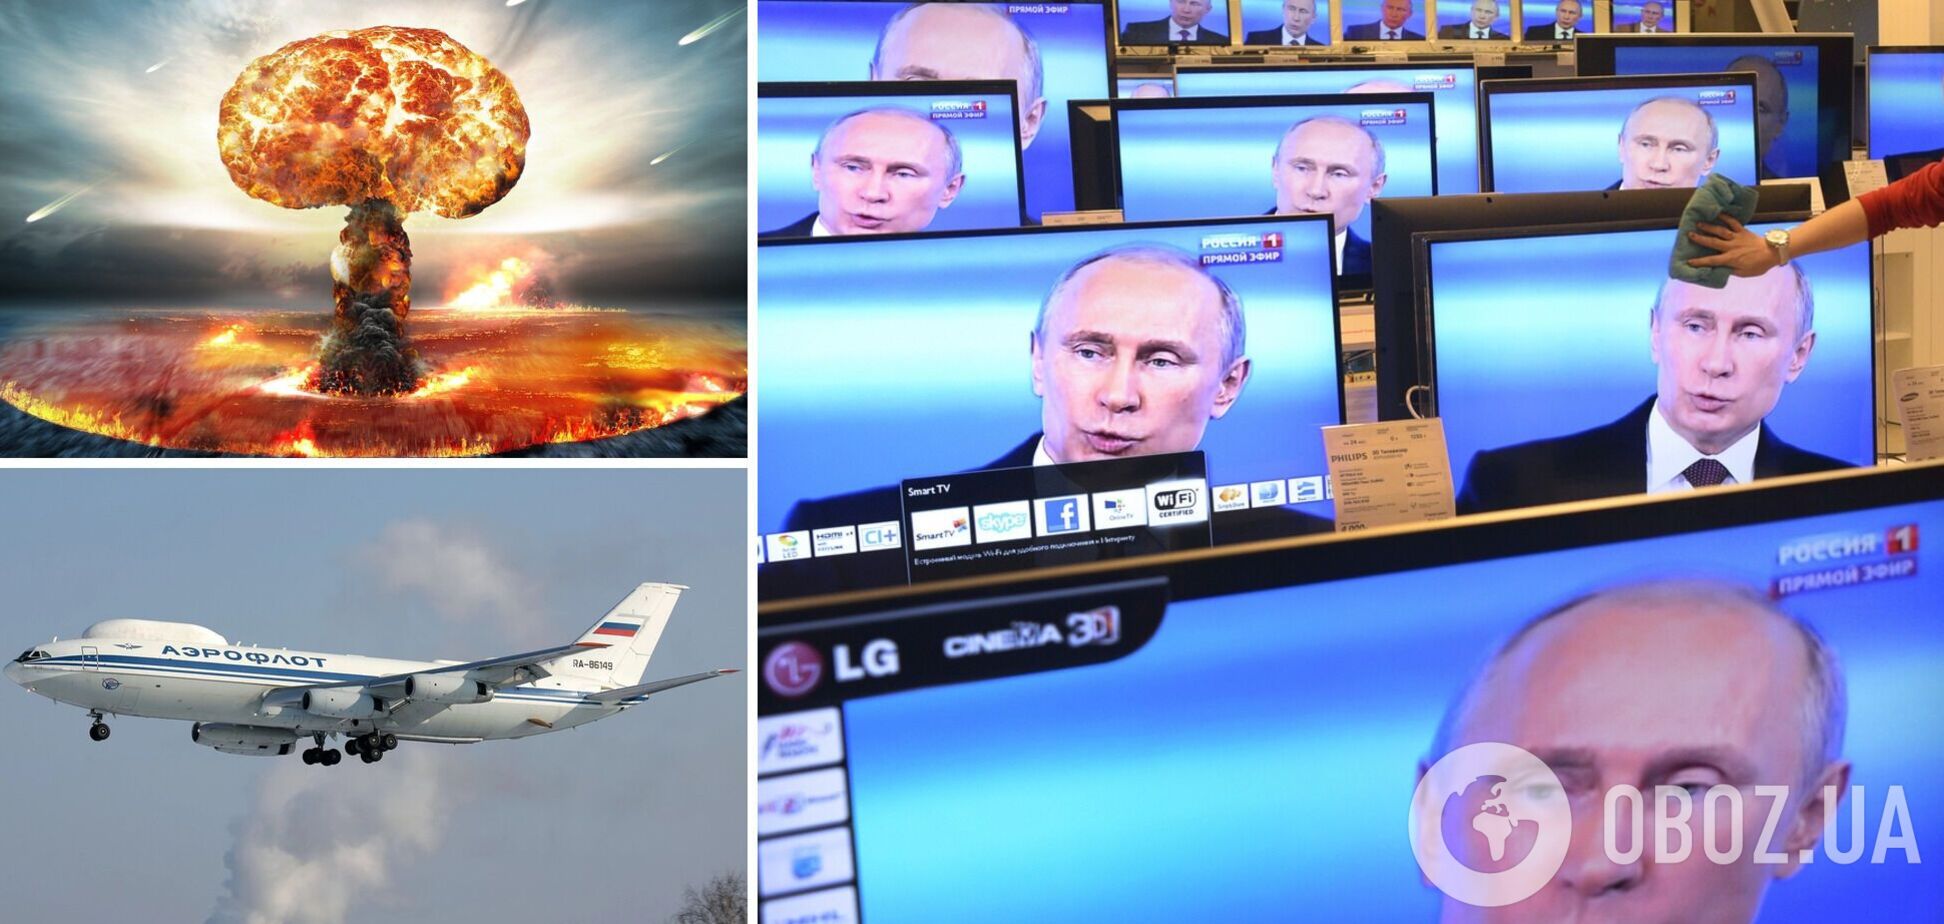 'Один 'Сармат' – і все': як і навіщо пропаганда готує росіян до ядерної війни